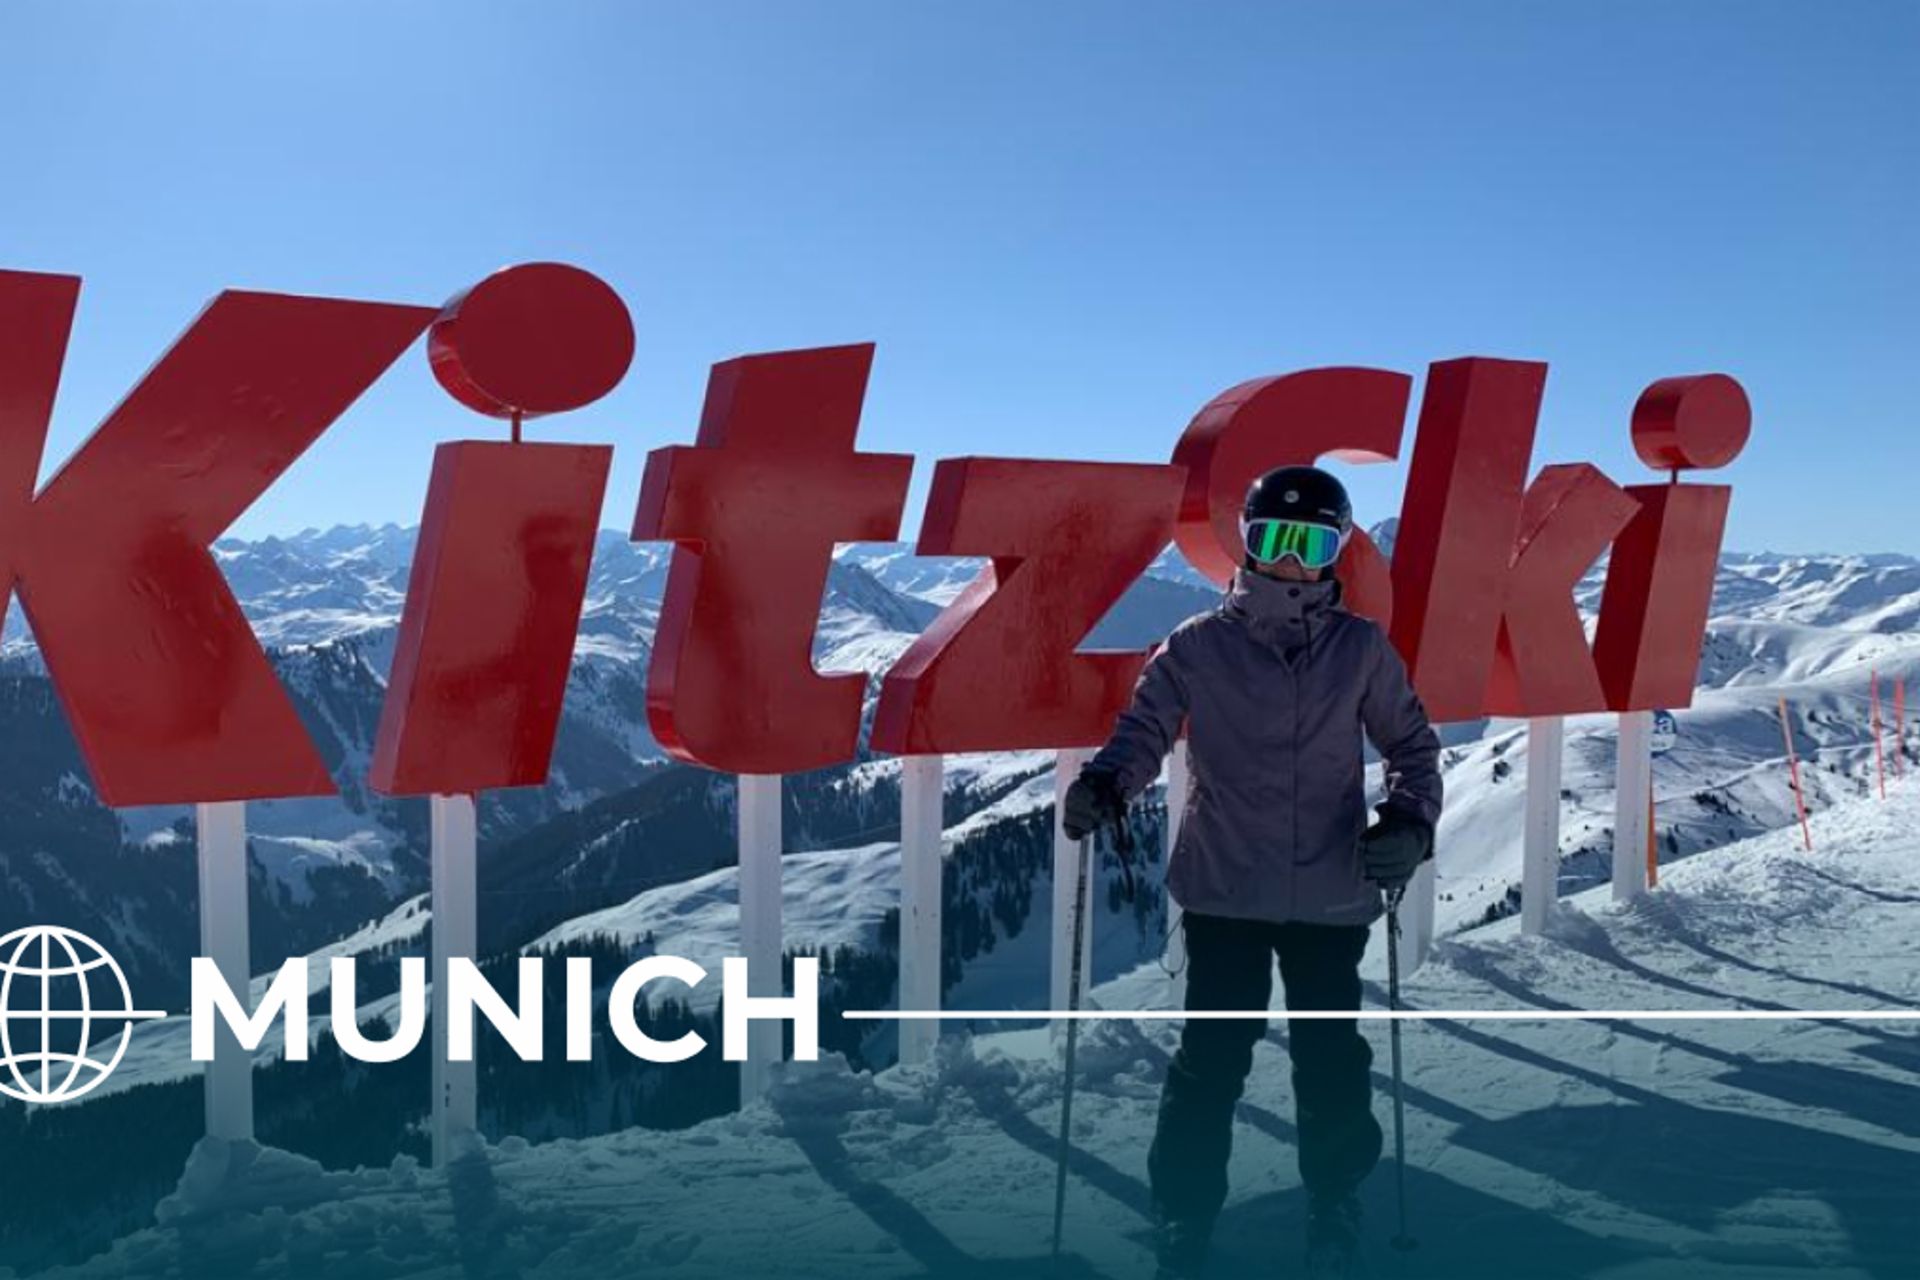 Ausflug in die Kitzbüheler Alpen: Zum ersten Mal seit 25 Jahren steht Darcy ich wieder auf Ski. Das Skigebiet KitzSki liegt in Österreich zwischen Kitzbüheler Horn und Hahnenkamm auf einer Höhe zwischen 800 und 2.000 Metern und ist rund 125 Kilometer von München entfernt.